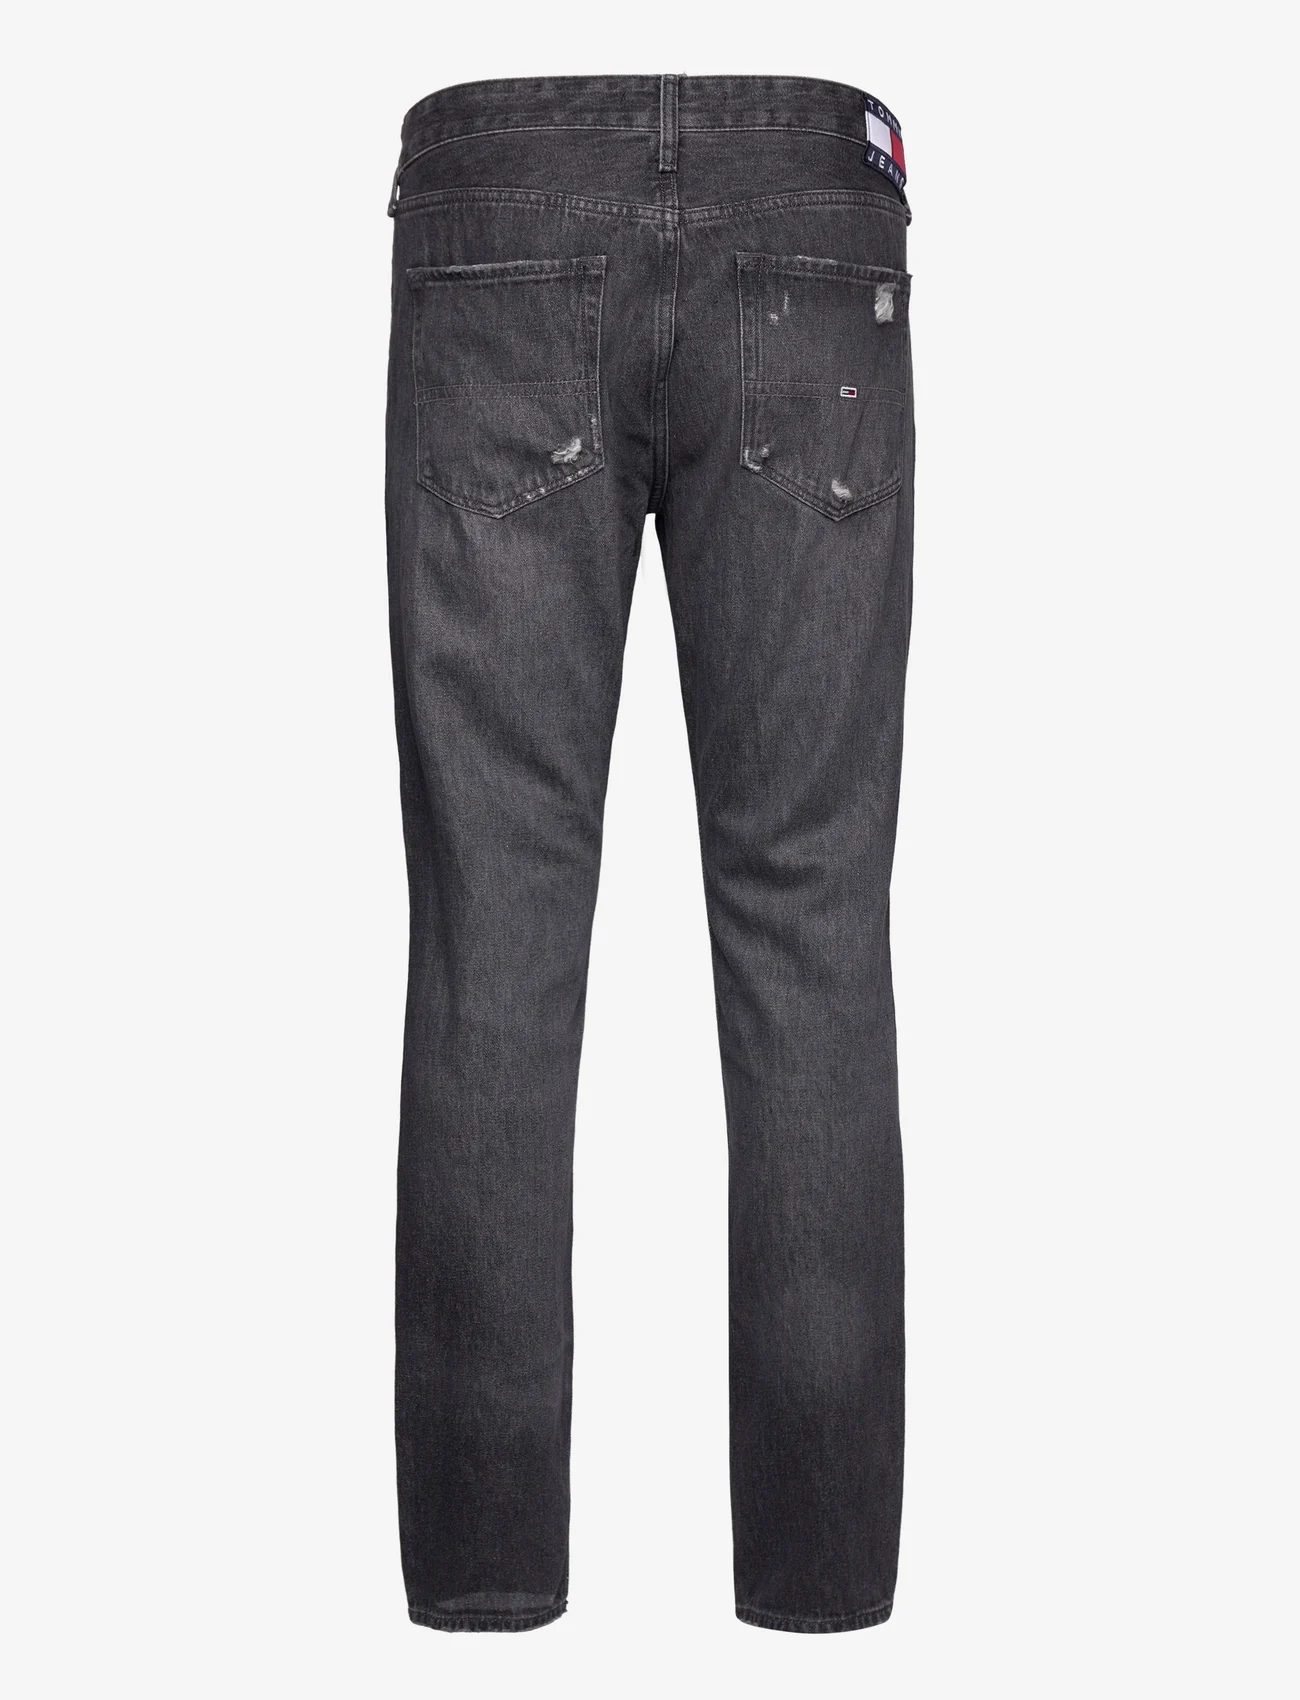 Tommy Jeans - SCANTON Y SLIM AG8081 - slim jeans - denim black - 1